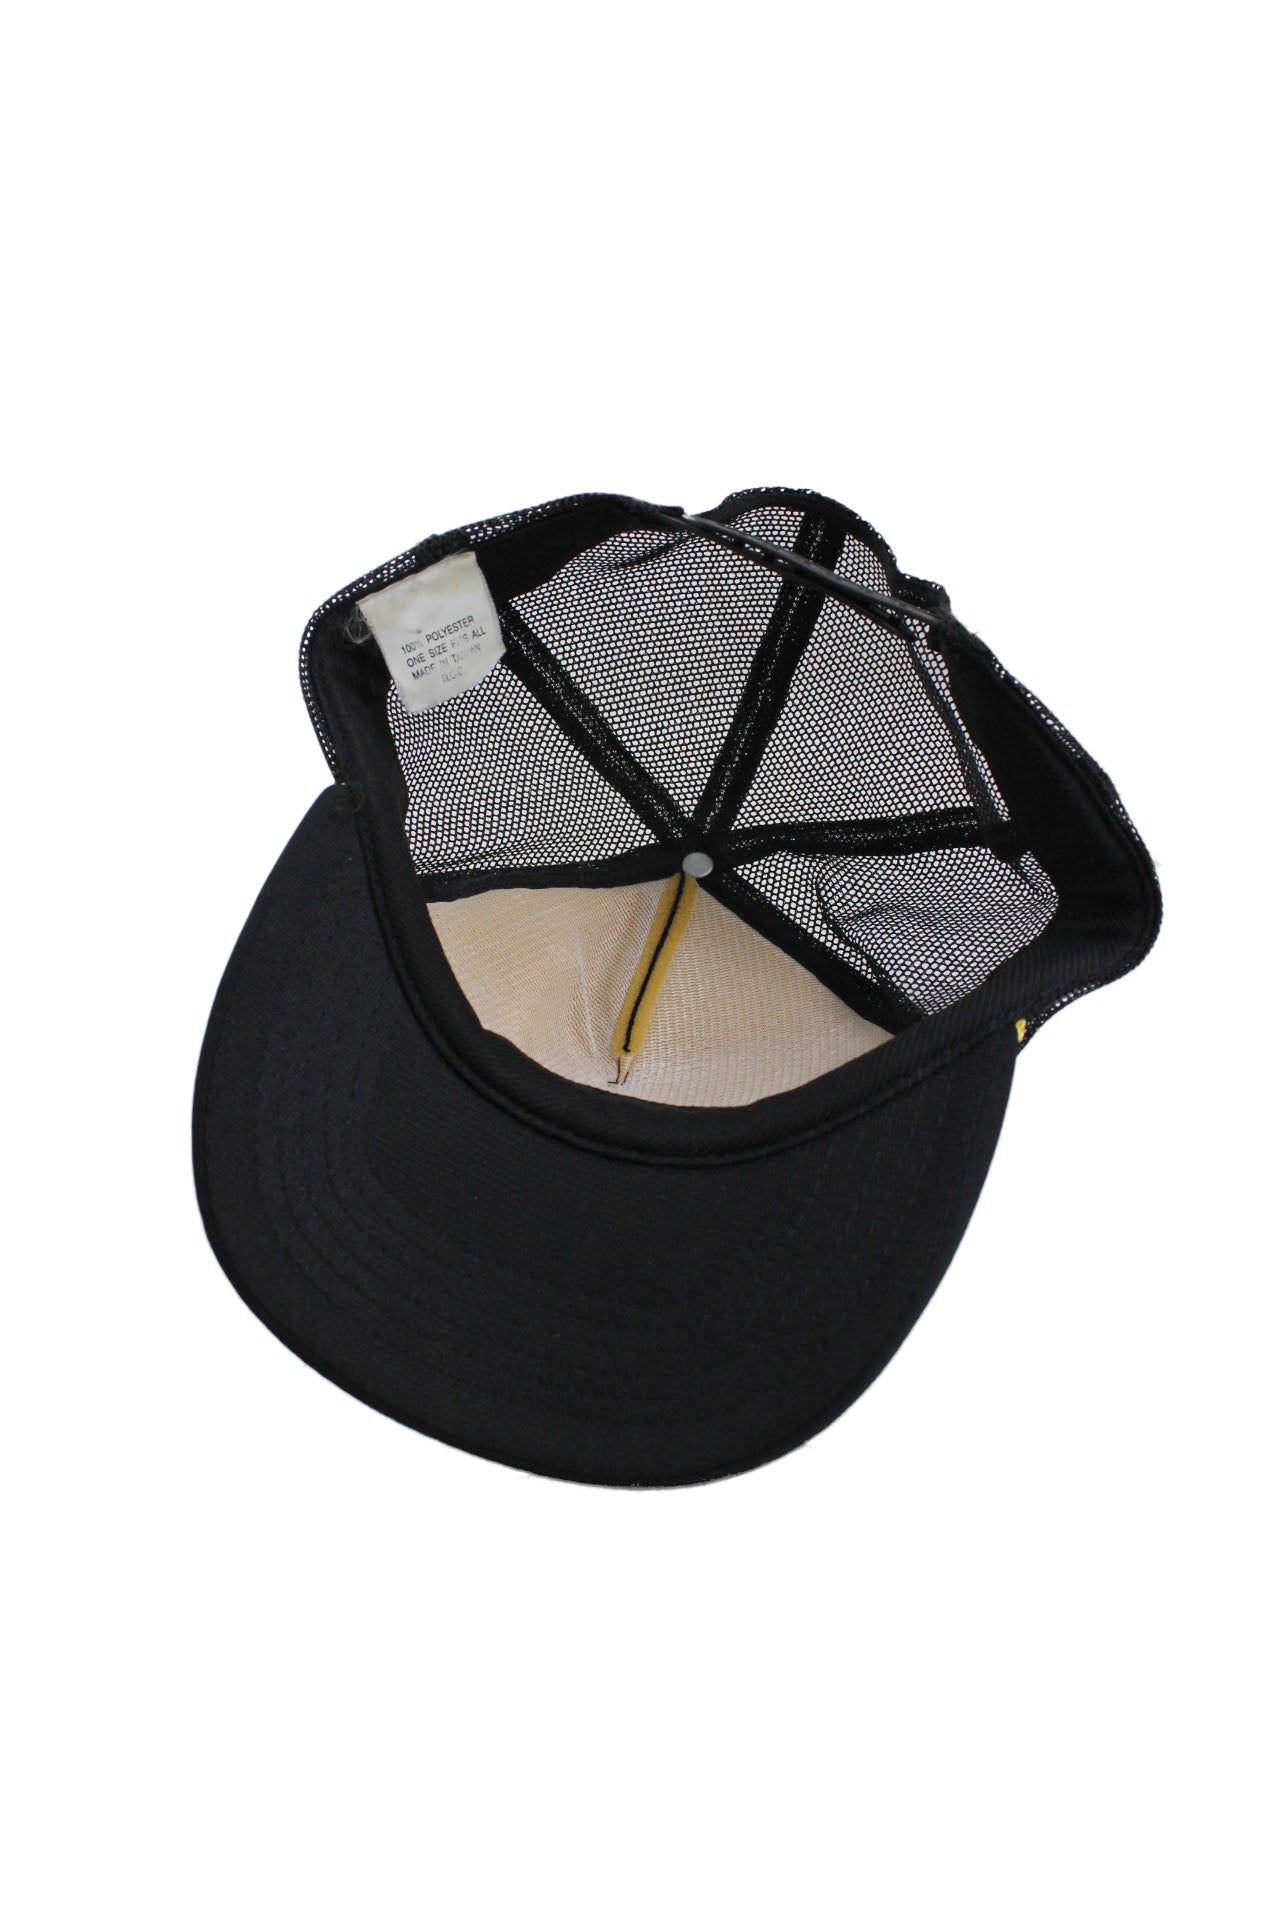 inner angle of trucker hat. 